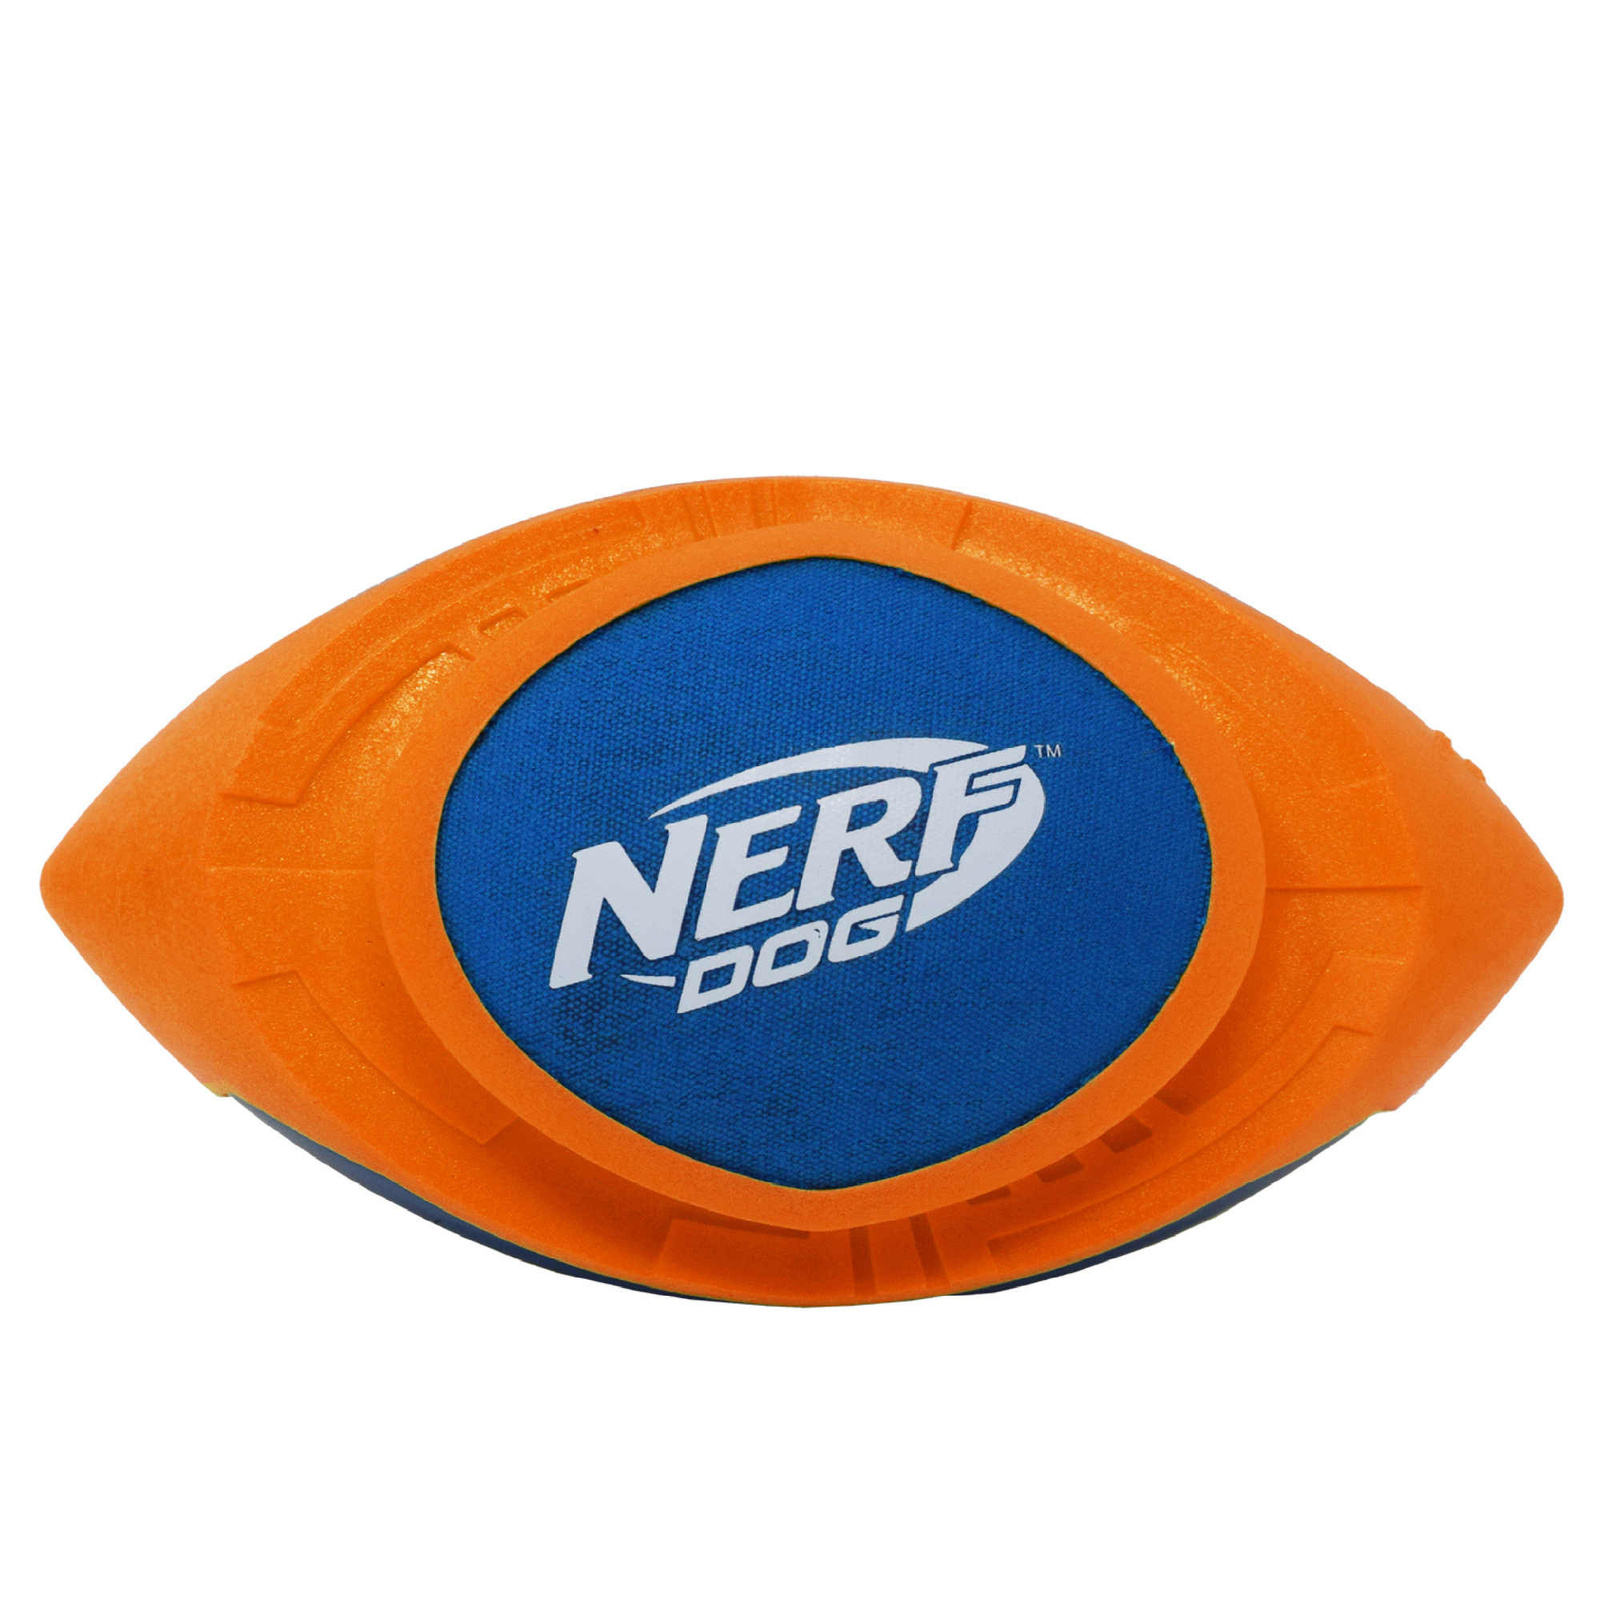 Nerf Nerf мяч для регби из вспененной резины и нейлона, 18 см (серия Мегатон), (синий/оранжевый) (263 г) nerf nerf светящийся мяч для регби 13 5 см 190 г